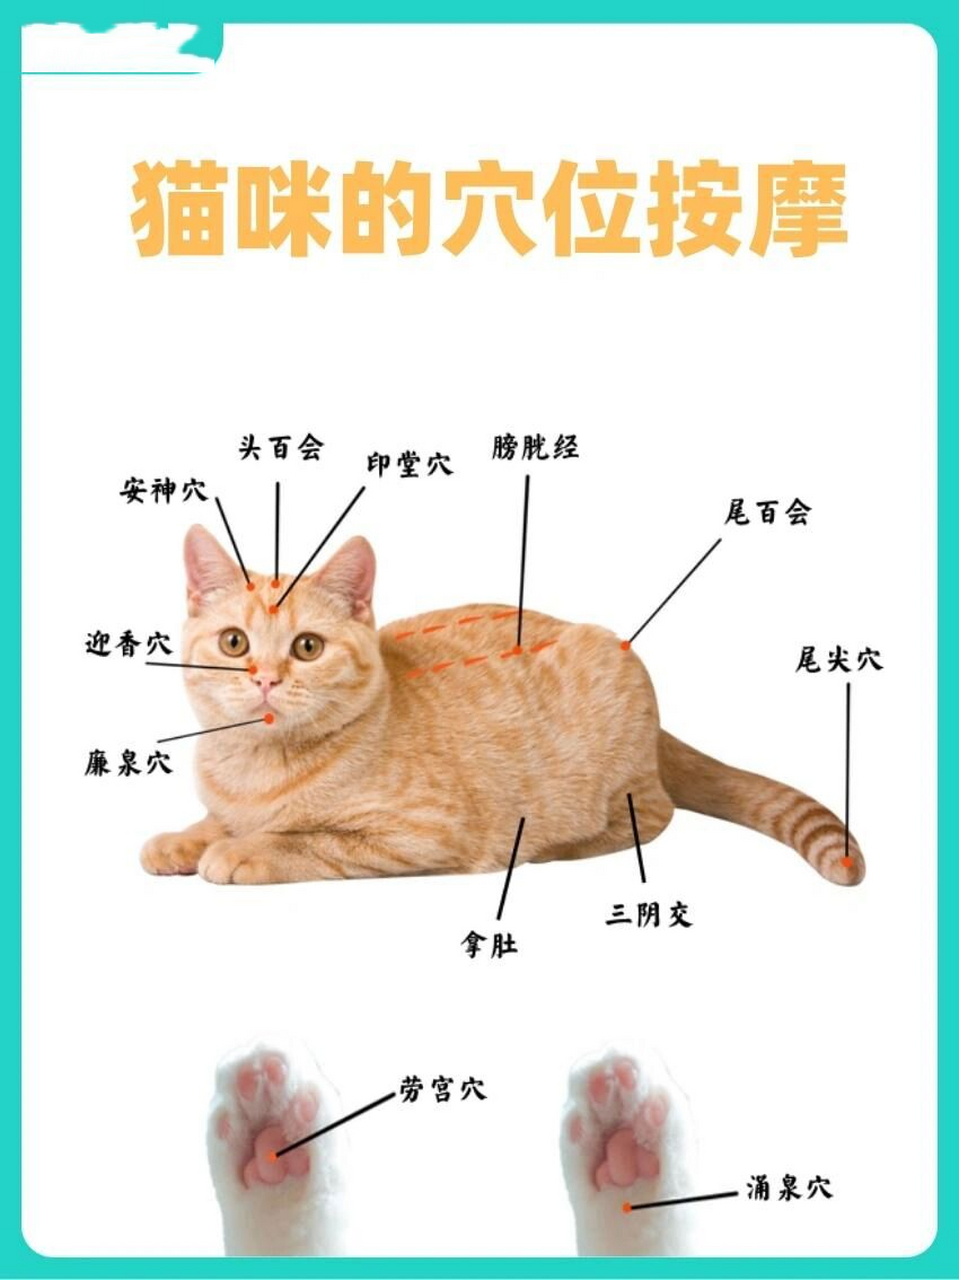 猫打针位置方法图解图片